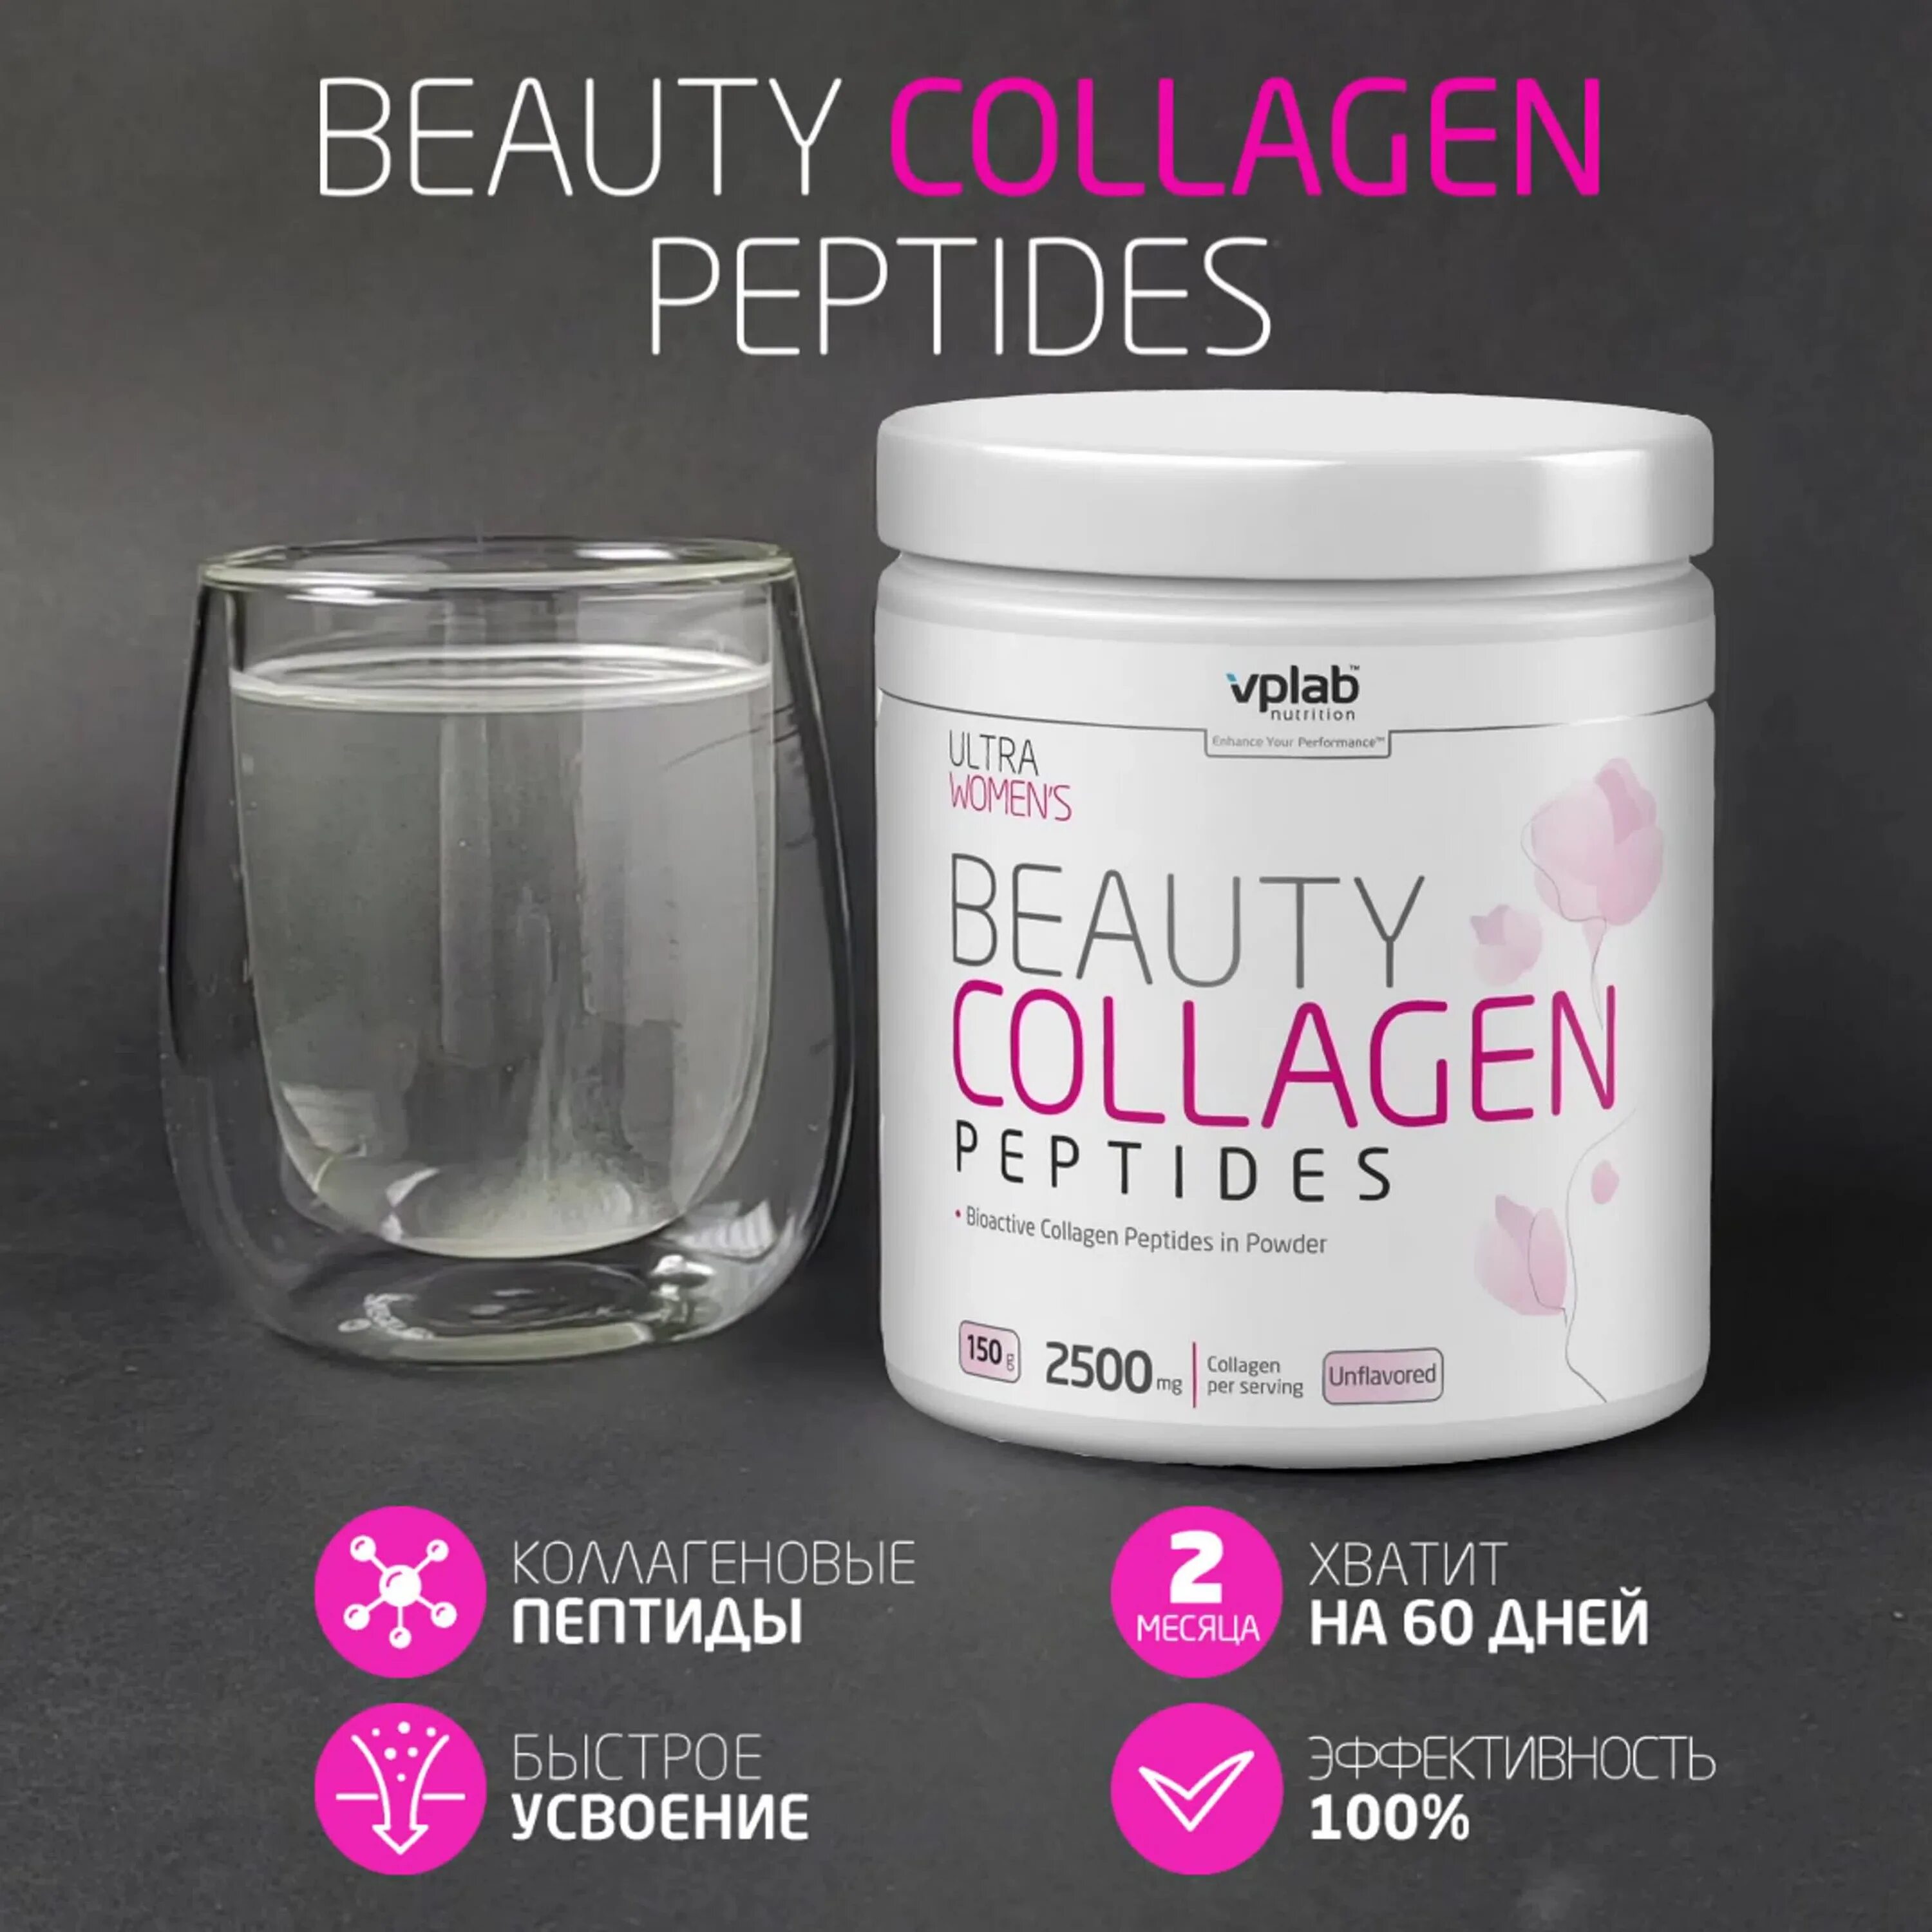 Коллаген VPLAB Collagen Peptides. Бьюти коллаген пептид VPLAB. Коллаген VPLAB Nutrition Beauty Collagen Peptides. Коллаген пептид 430мл.